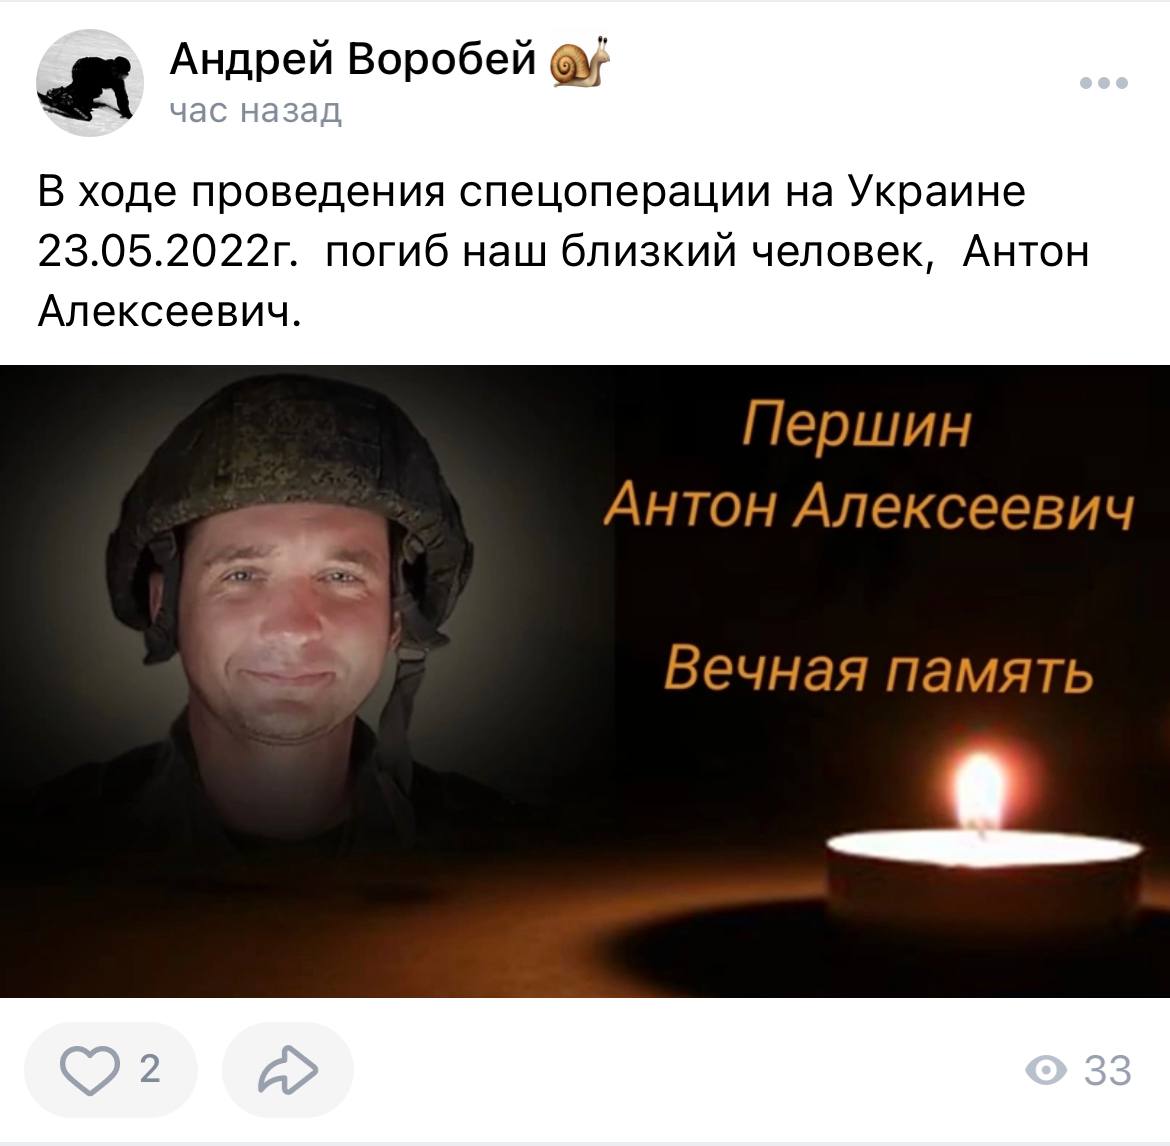 Першин Антон Алексеевич погиб 23.05.2022 из региона Курганская область, Юргамышский р-н, пос. Юргамыш